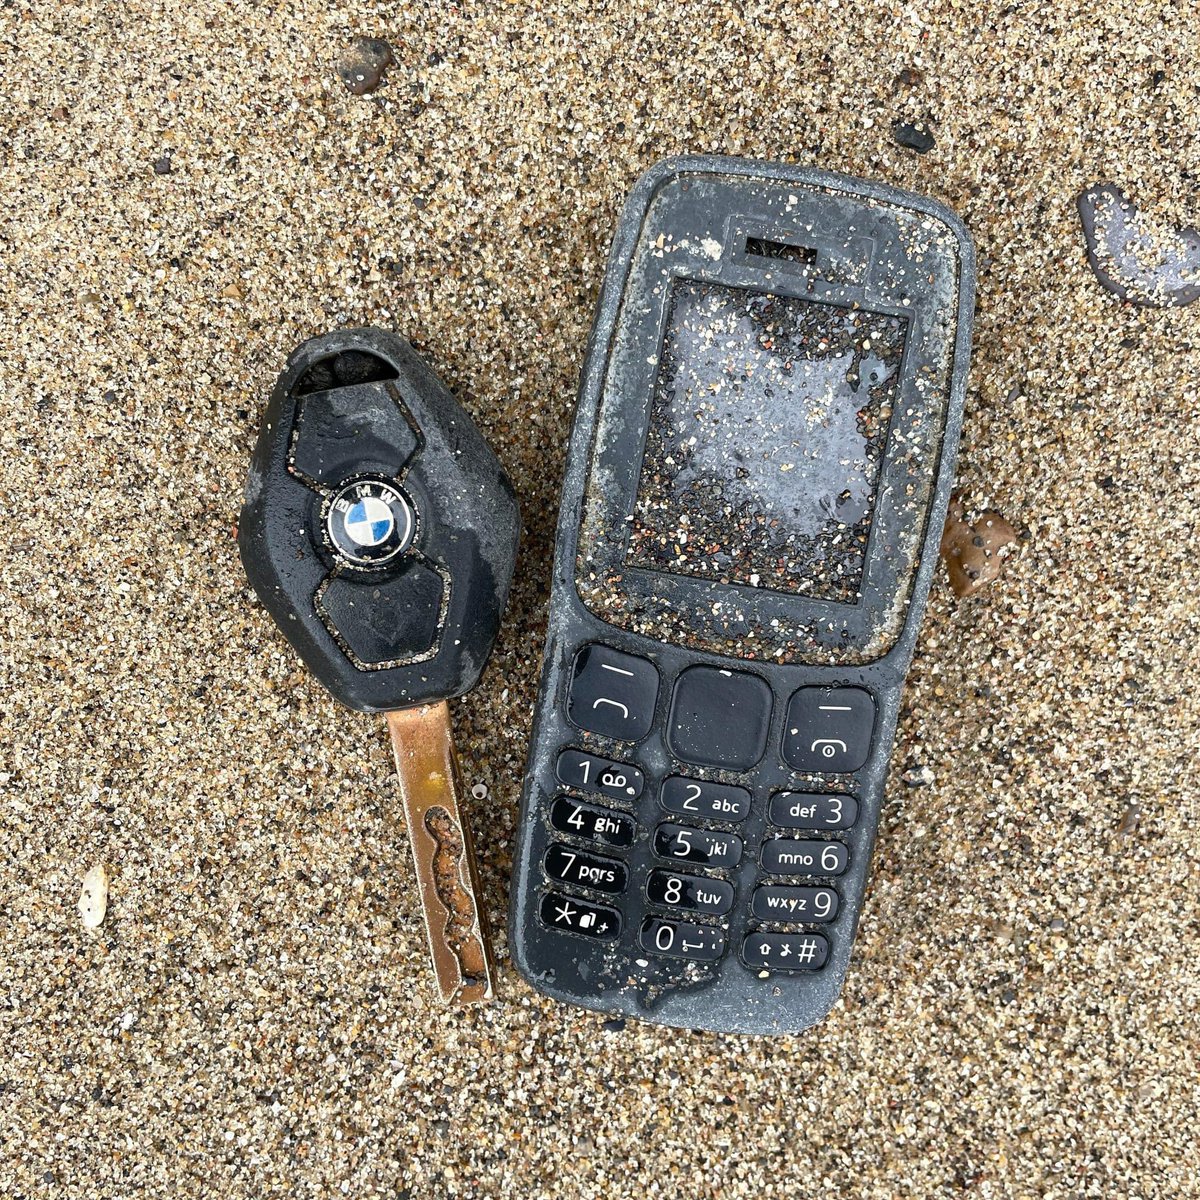 Someone lost their phone and car key c.2005

#Mudlark #Mudlarking